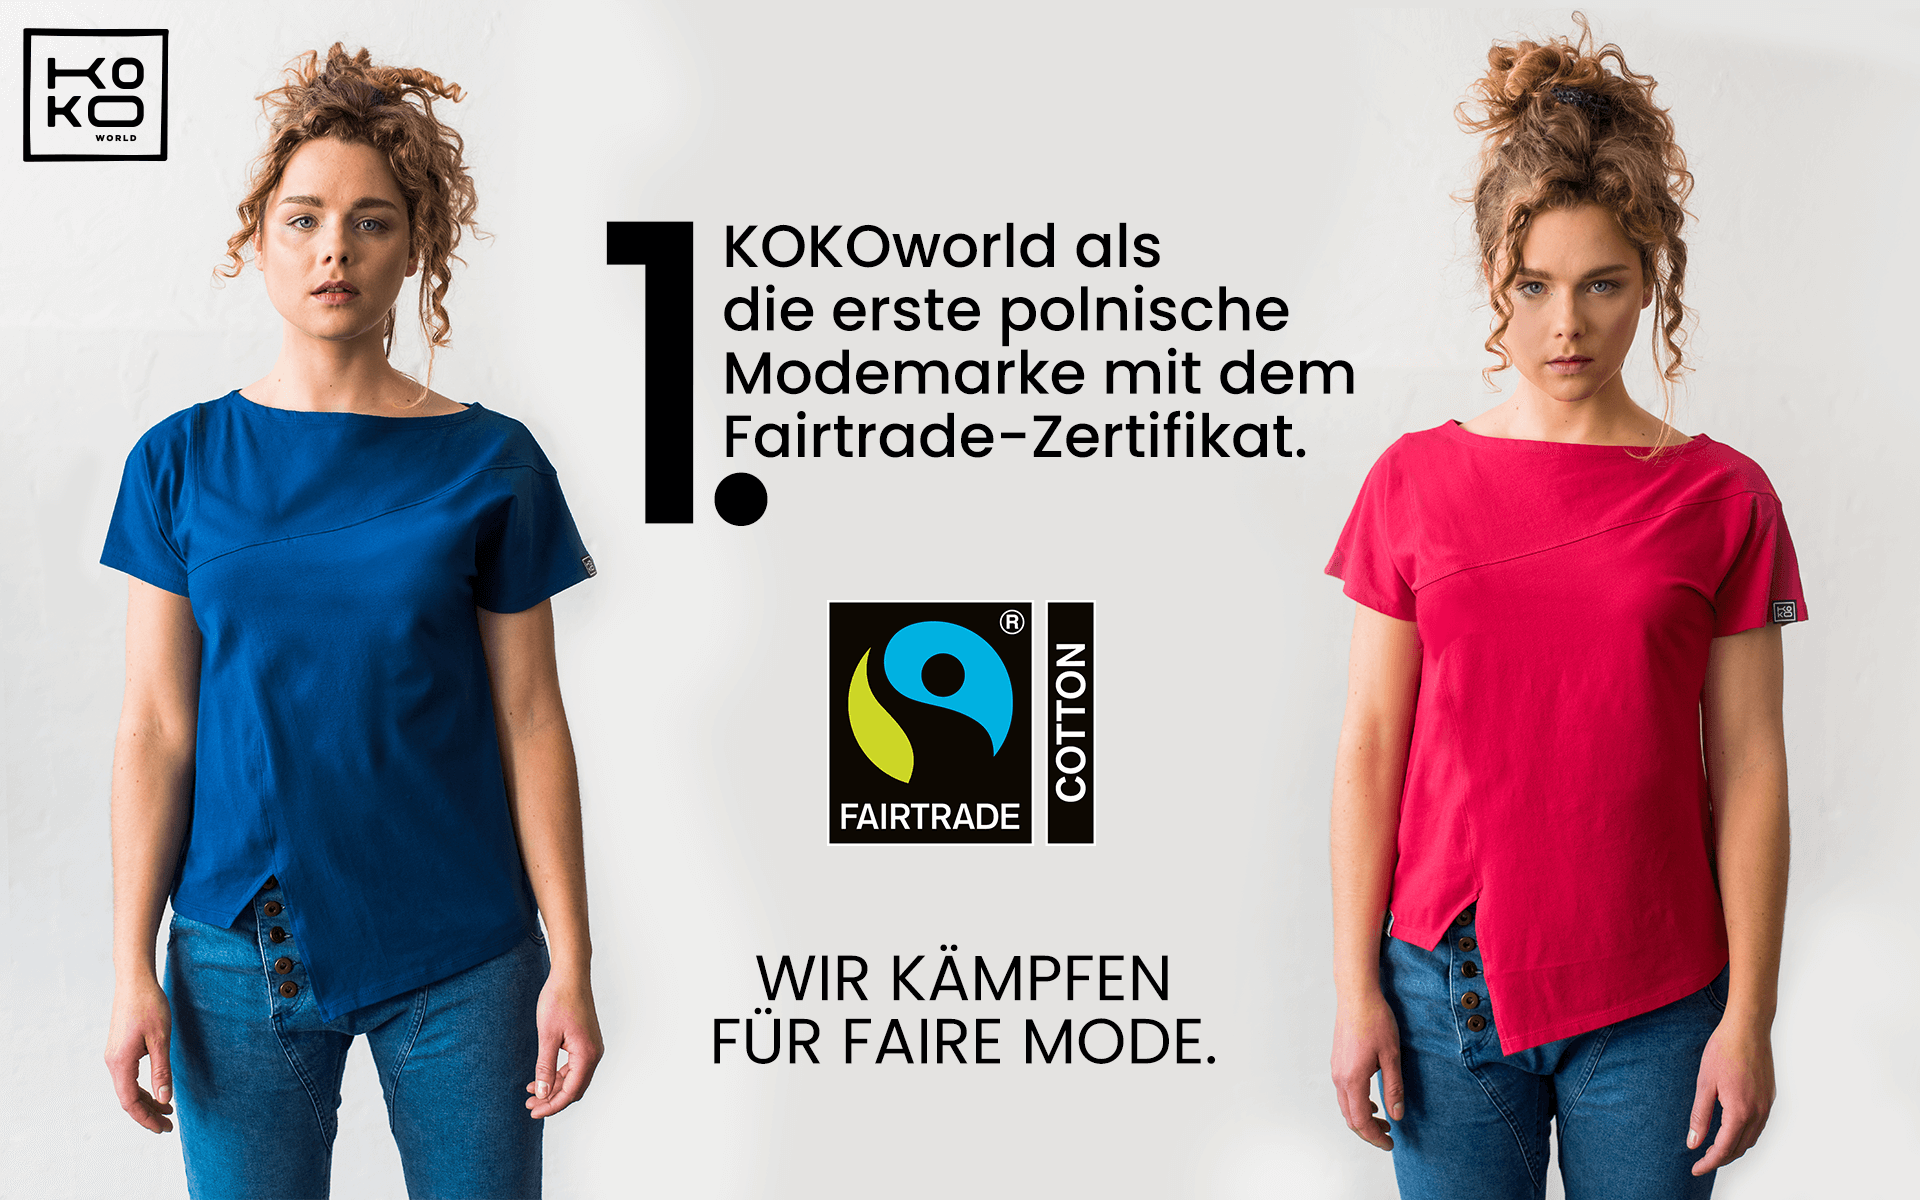 Walczymy o sprawiedliwą modę – KOKOworld jako pierwsza polska marka fashion z certyfikatem Fairtrade